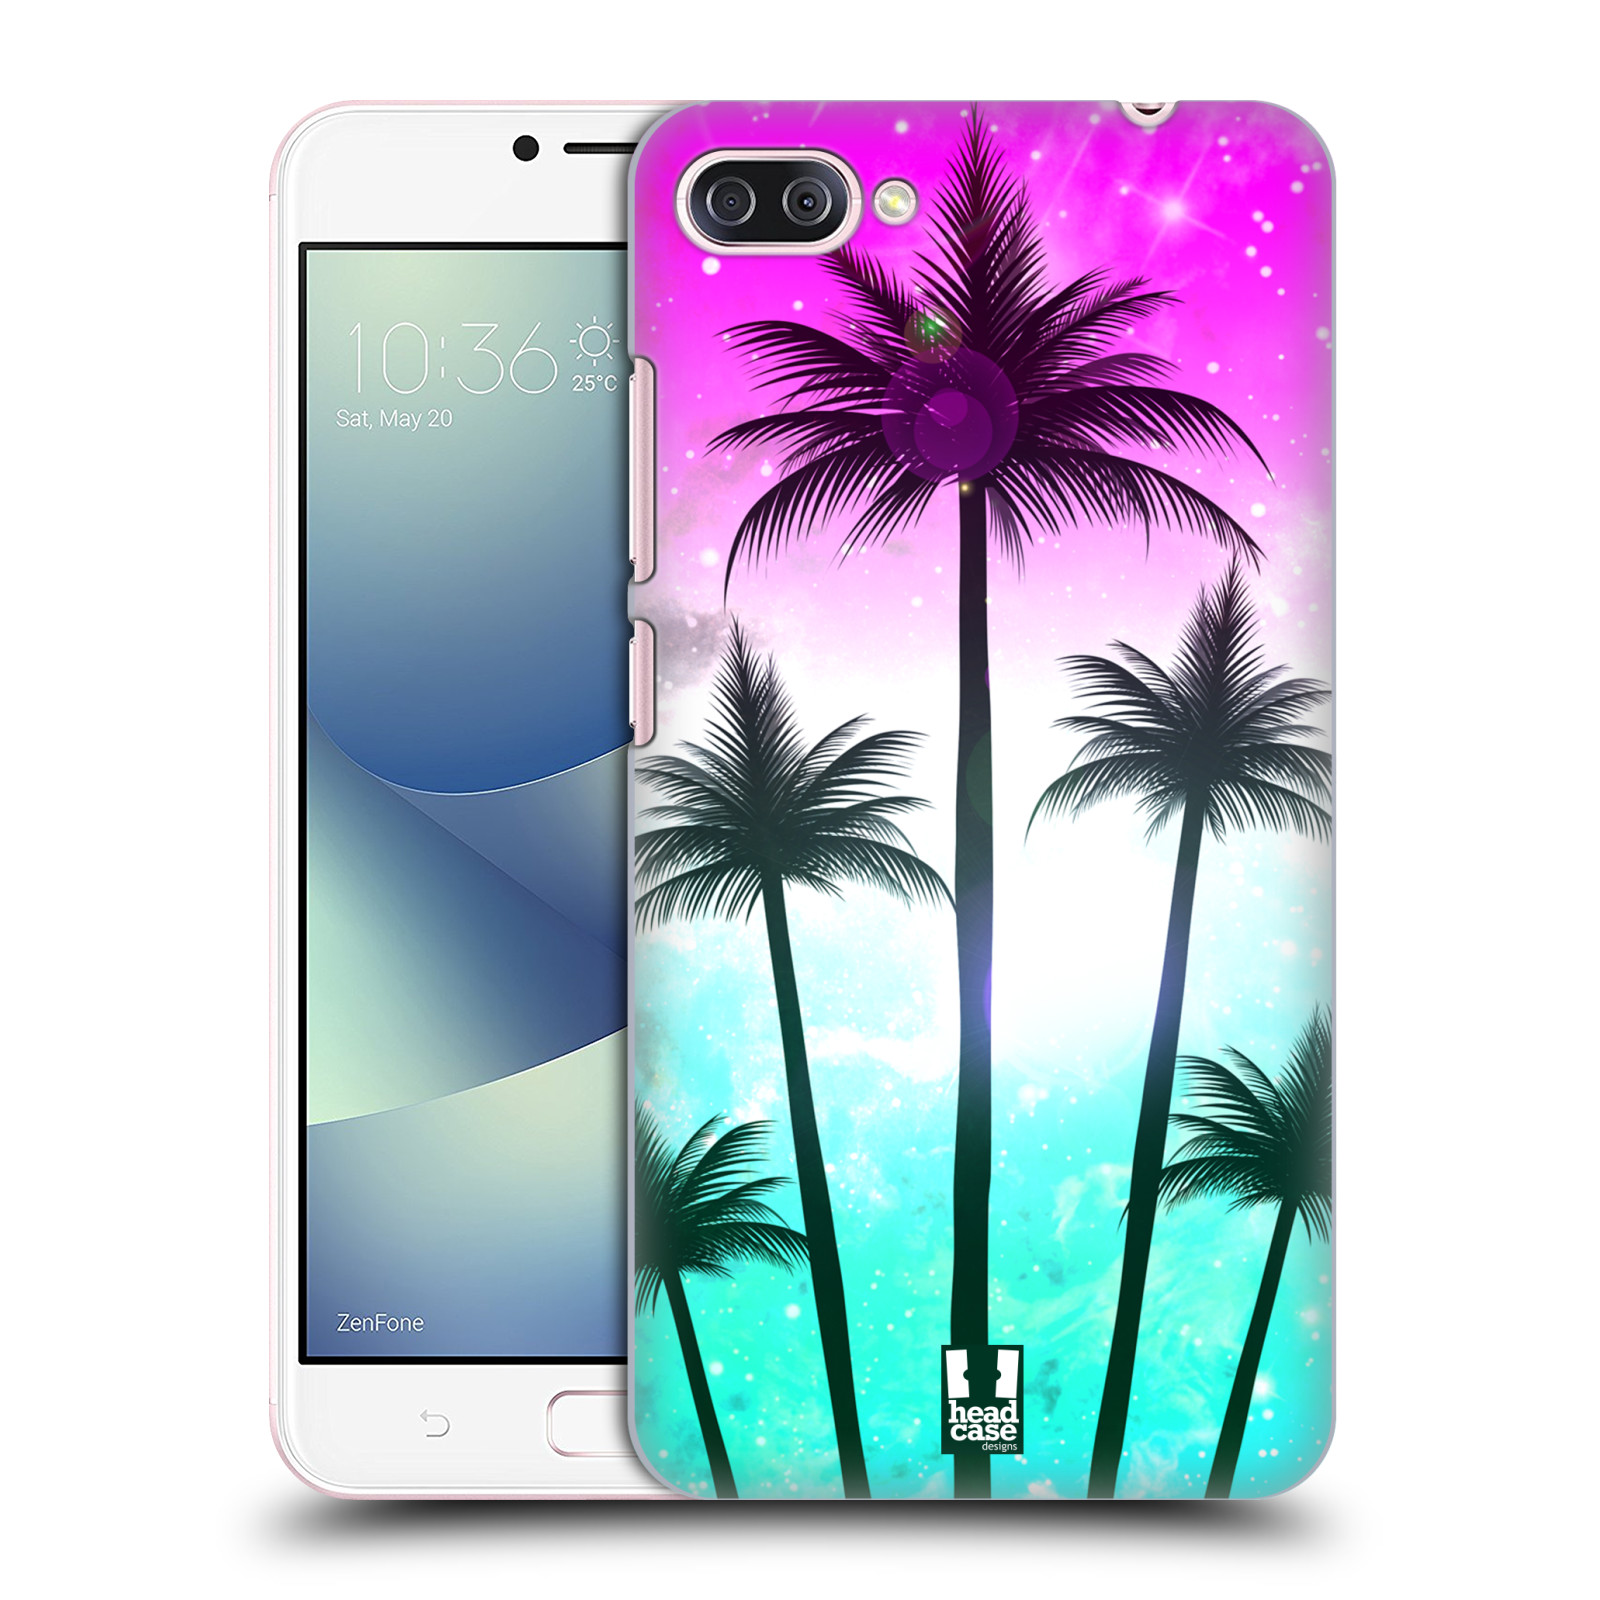 HEAD CASE plastový obal na mobil Asus Zenfone 4 MAX ZC554KL vzor Kreslený motiv silueta moře a palmy RŮŽOVÁ A TYRKYS